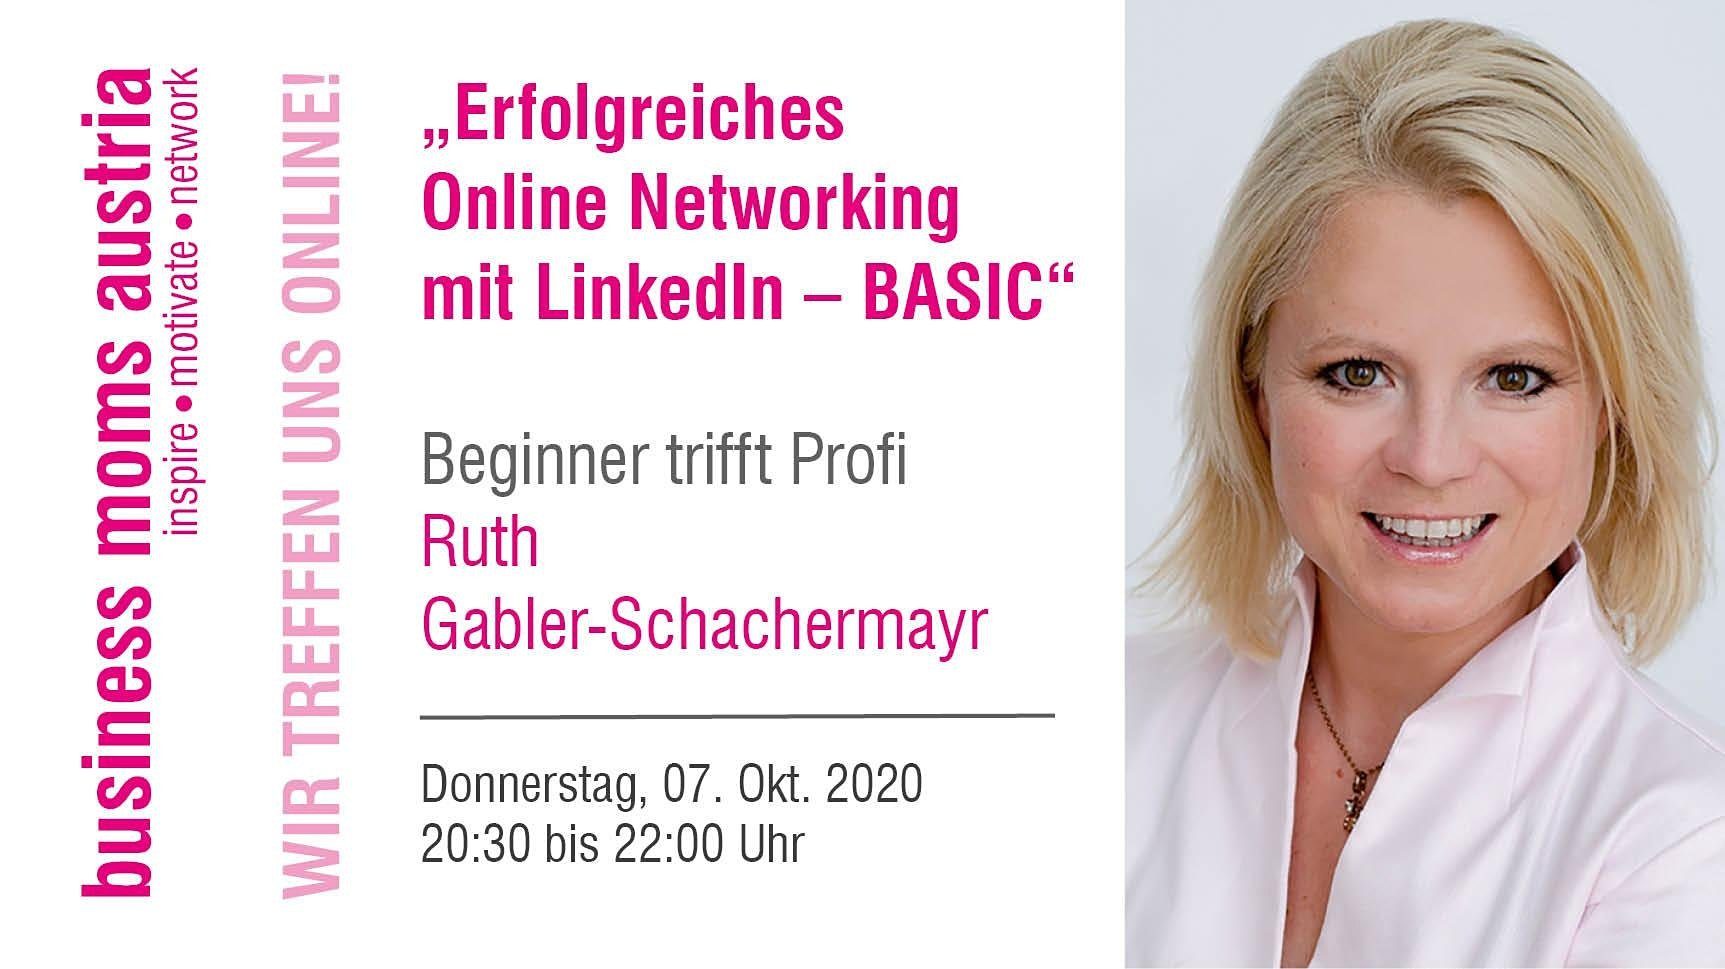 Online Networking mit LinkedIn Workshop von Ruth Gabler-Schachermayr